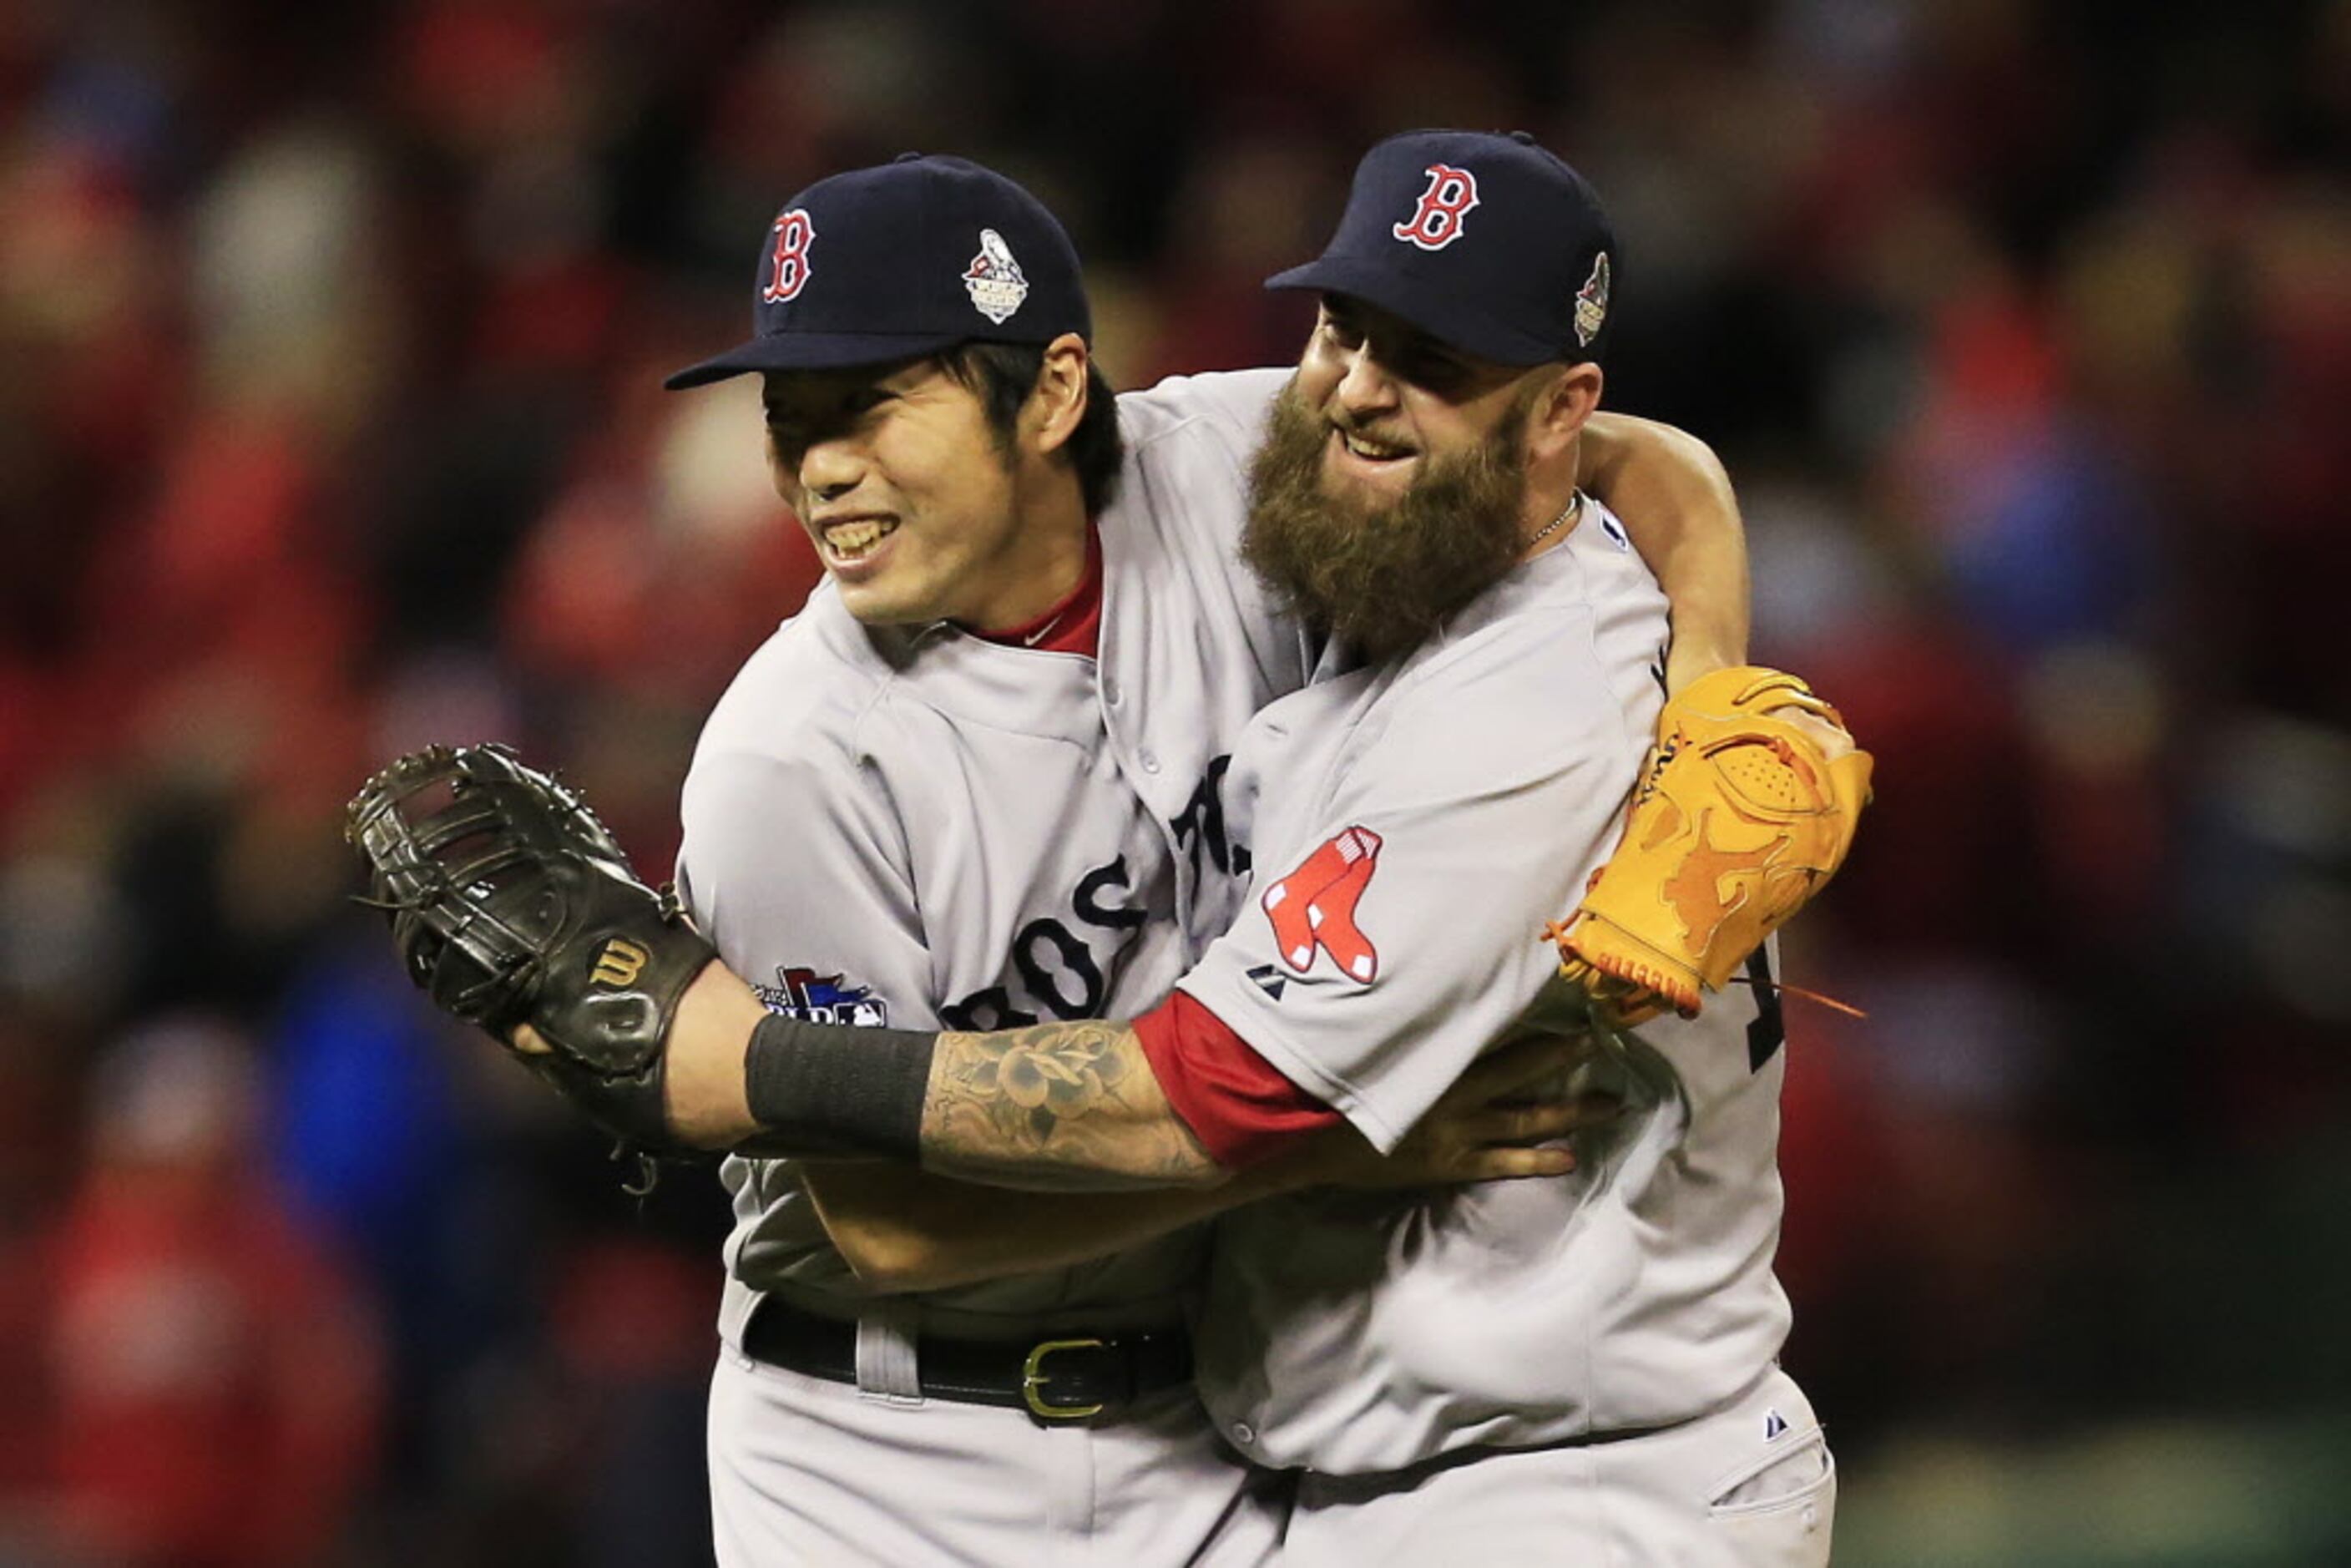 Red Sox 7, Astros 2: Big Papi provides big pop